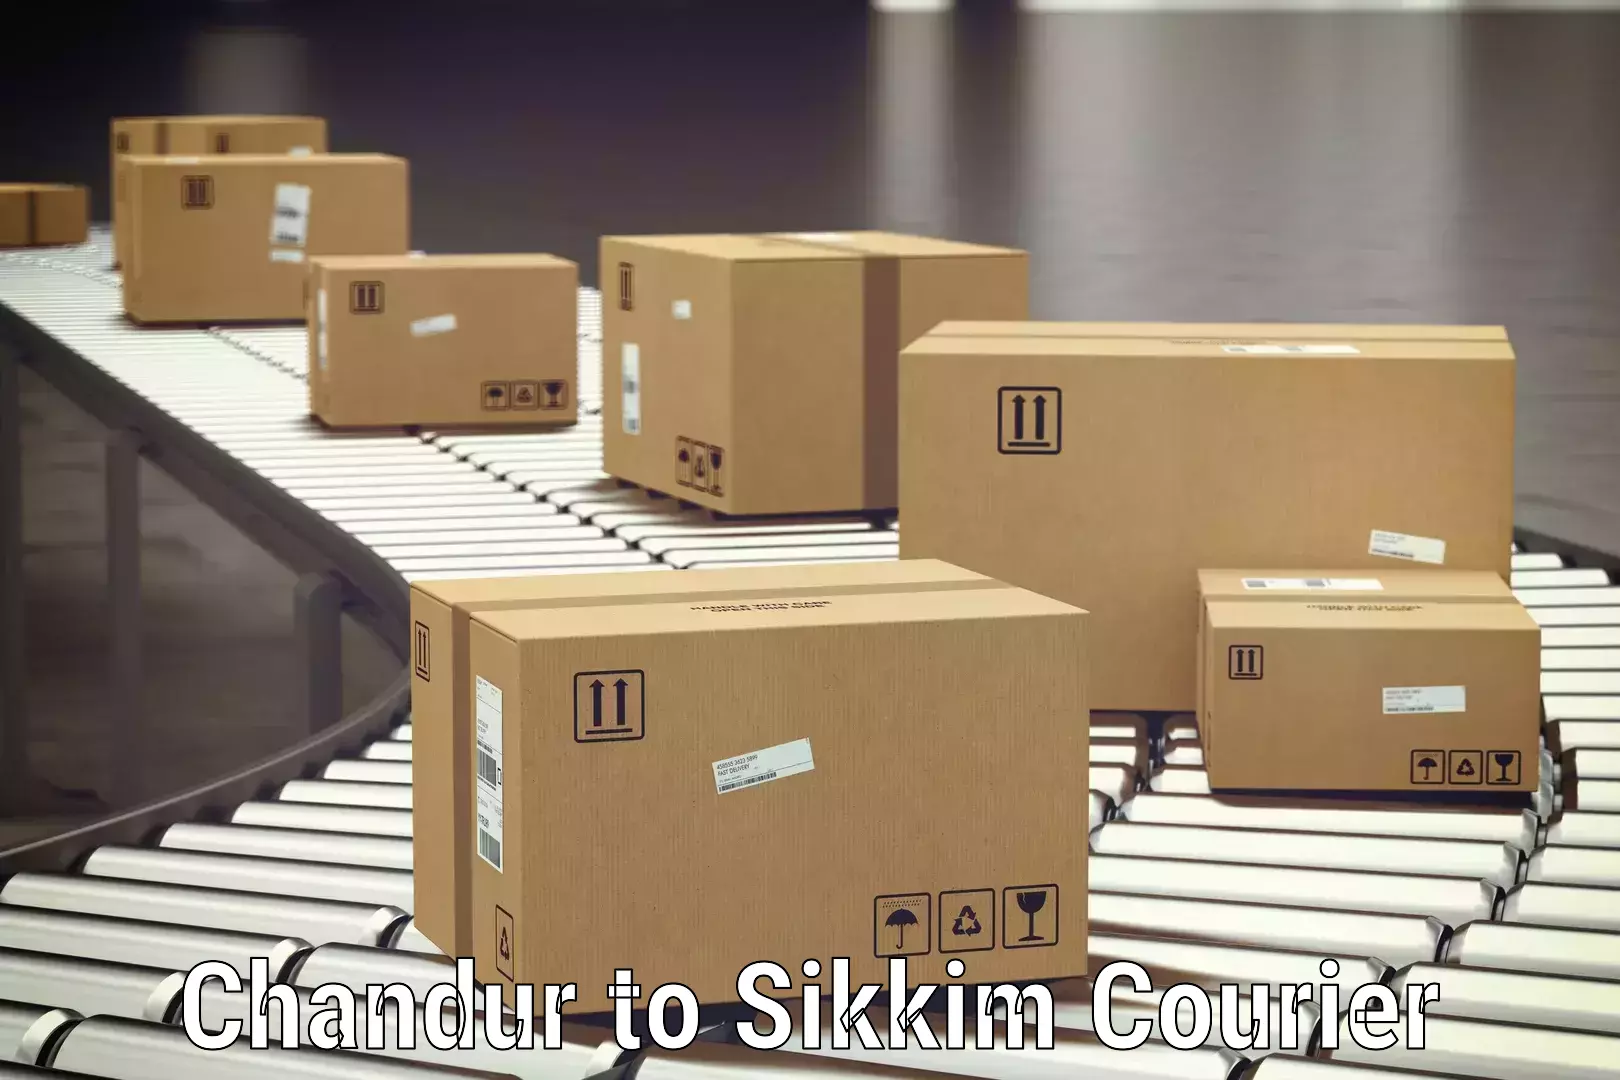 Luggage transport schedule in Chandur to Sikkim